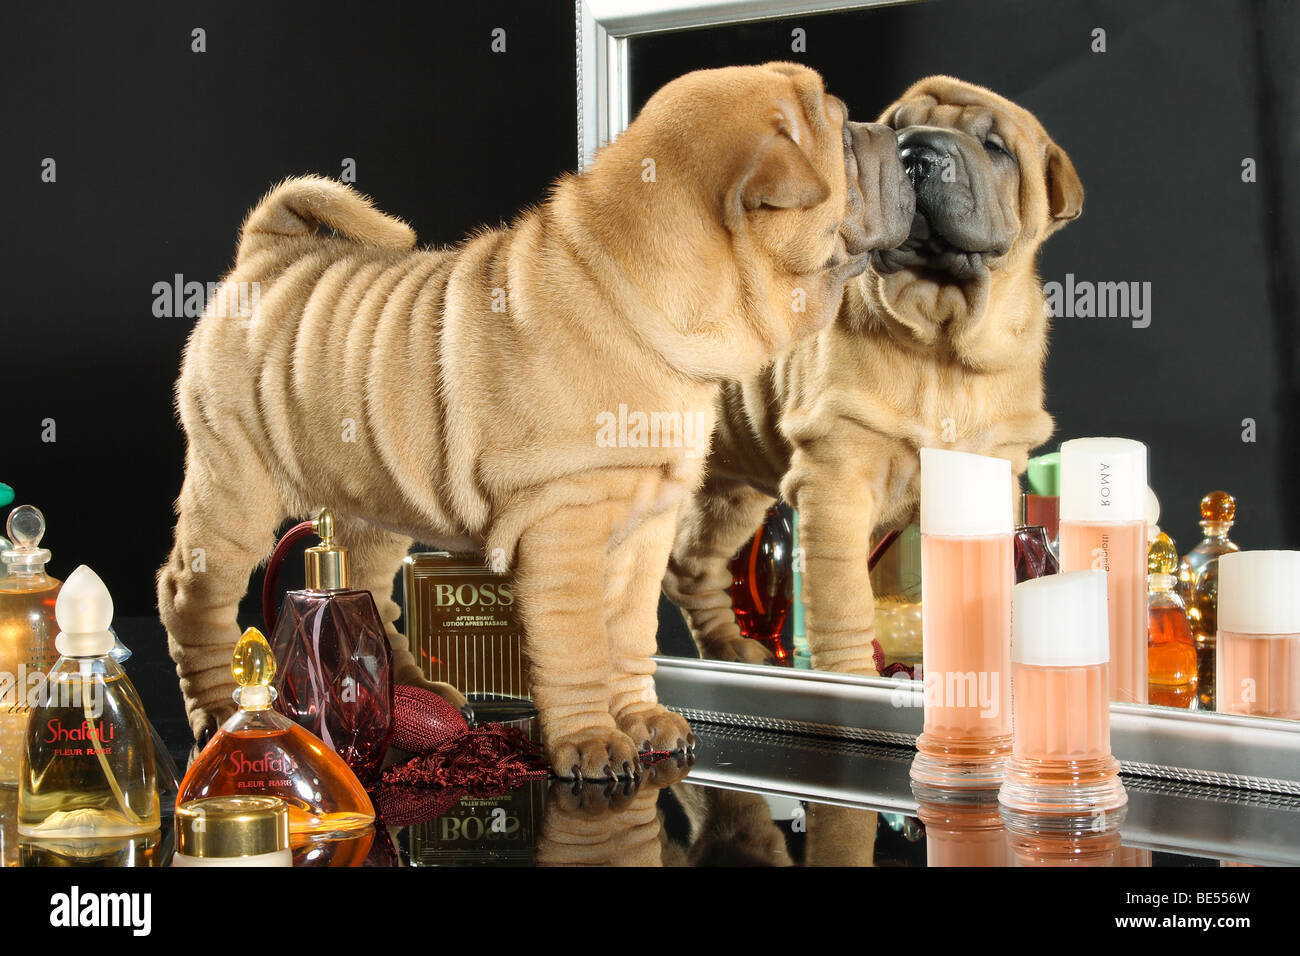 Shar Pei - chien chiot debout devant un miroir Banque D'Images